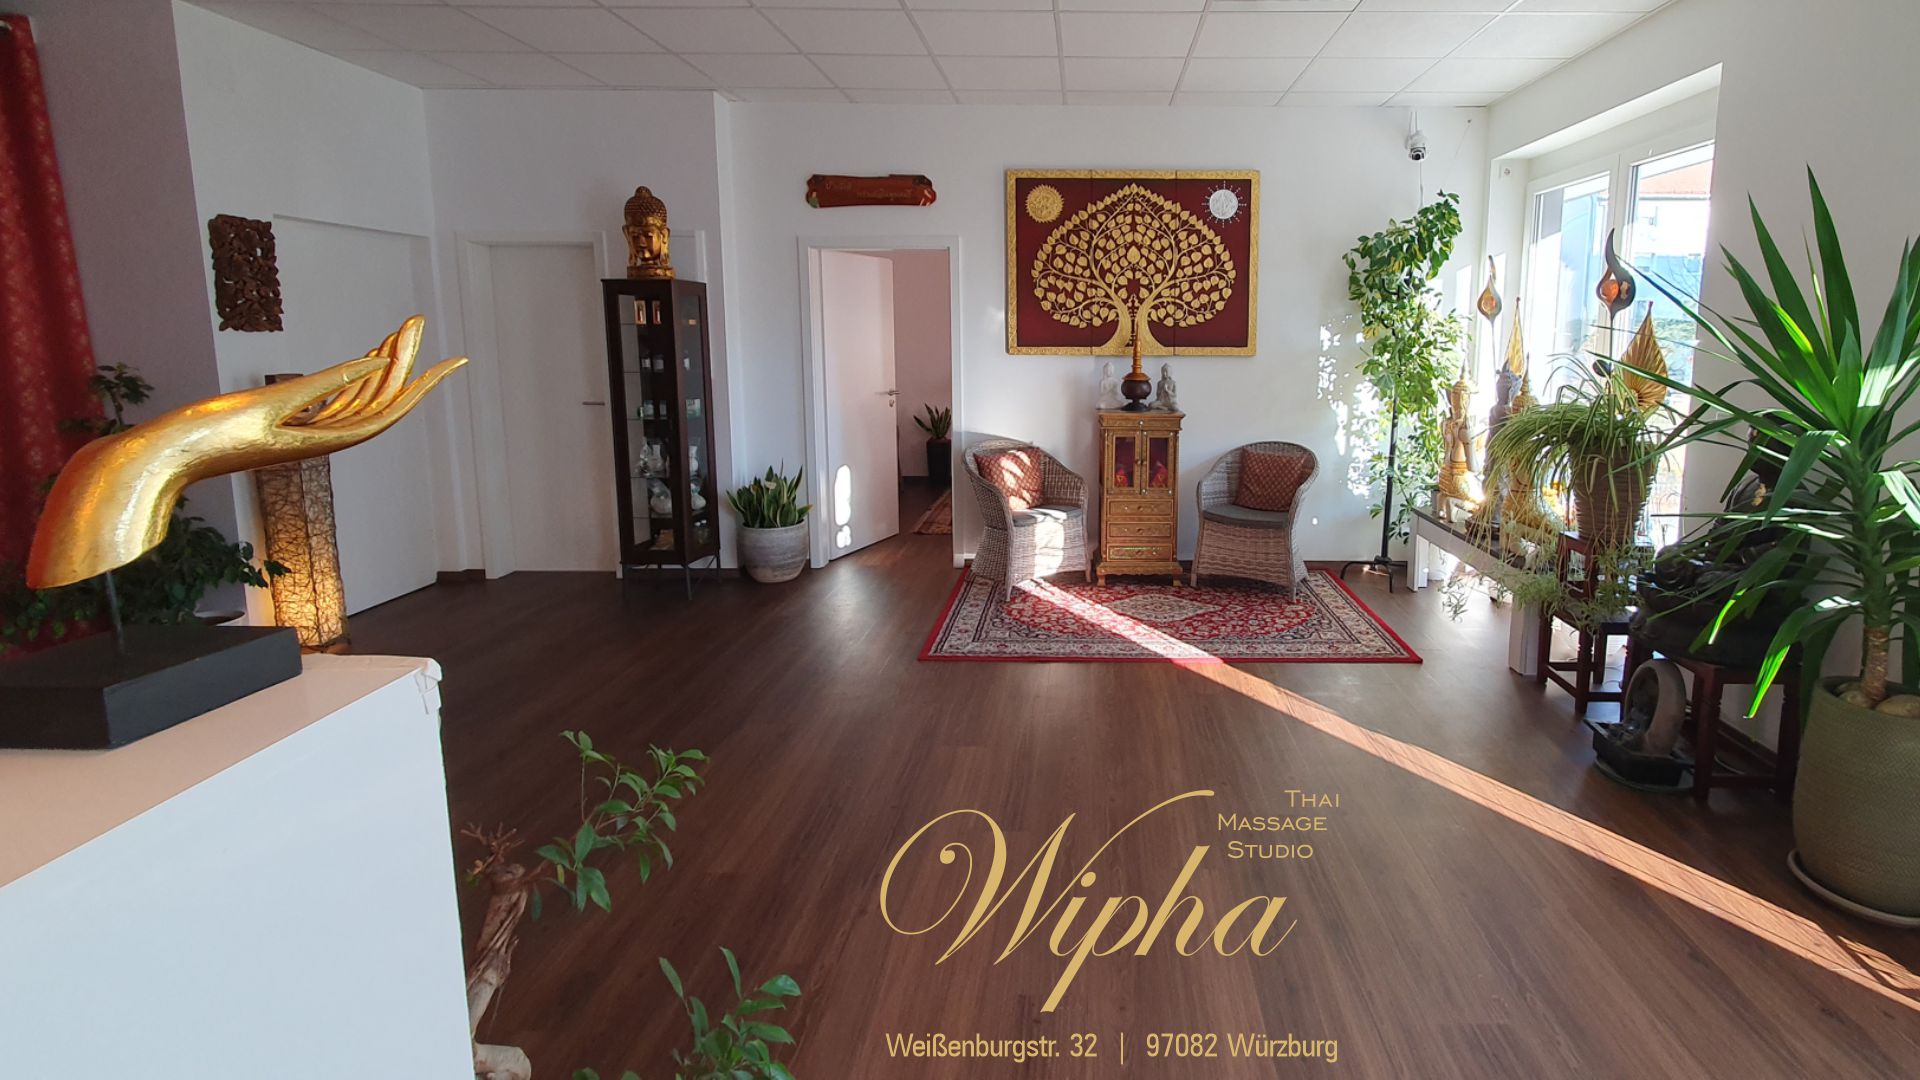 Abbildung Wipha Thai Massage Studio Würzburg Empfang